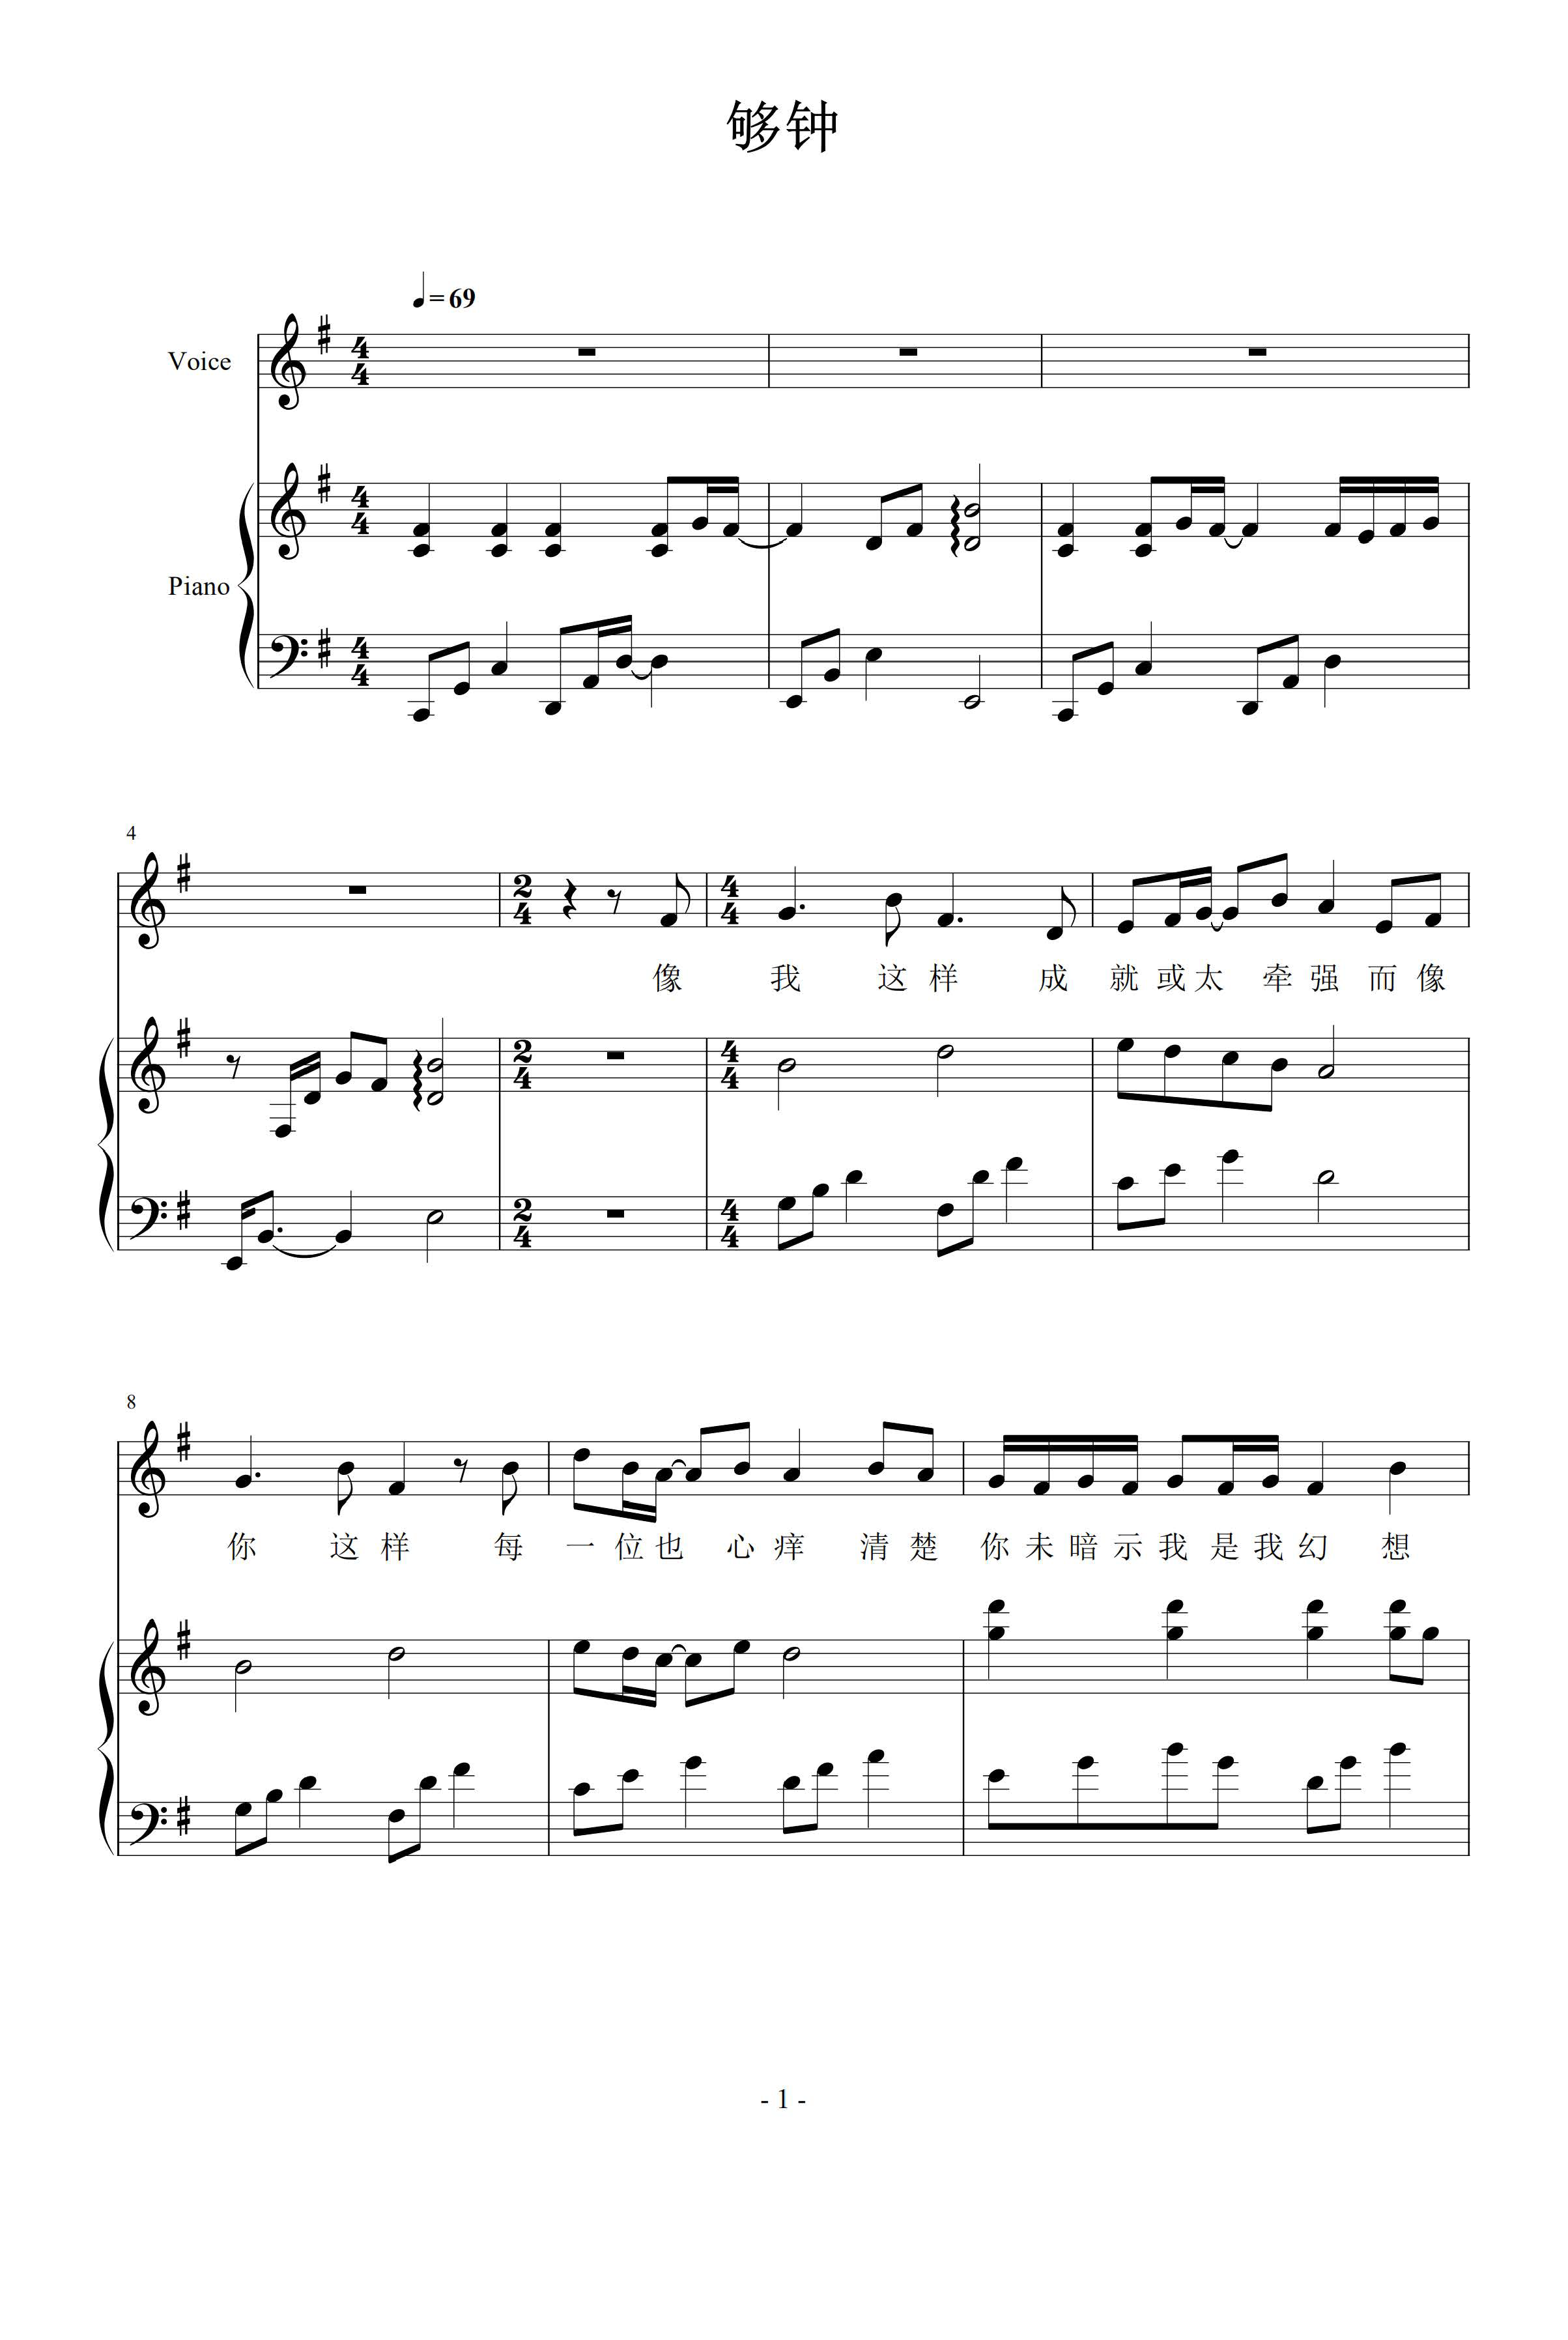 够钟-周柏豪双手简谱预览2-钢琴谱文件（五线谱、双手简谱、数字谱、Midi、PDF）免费下载